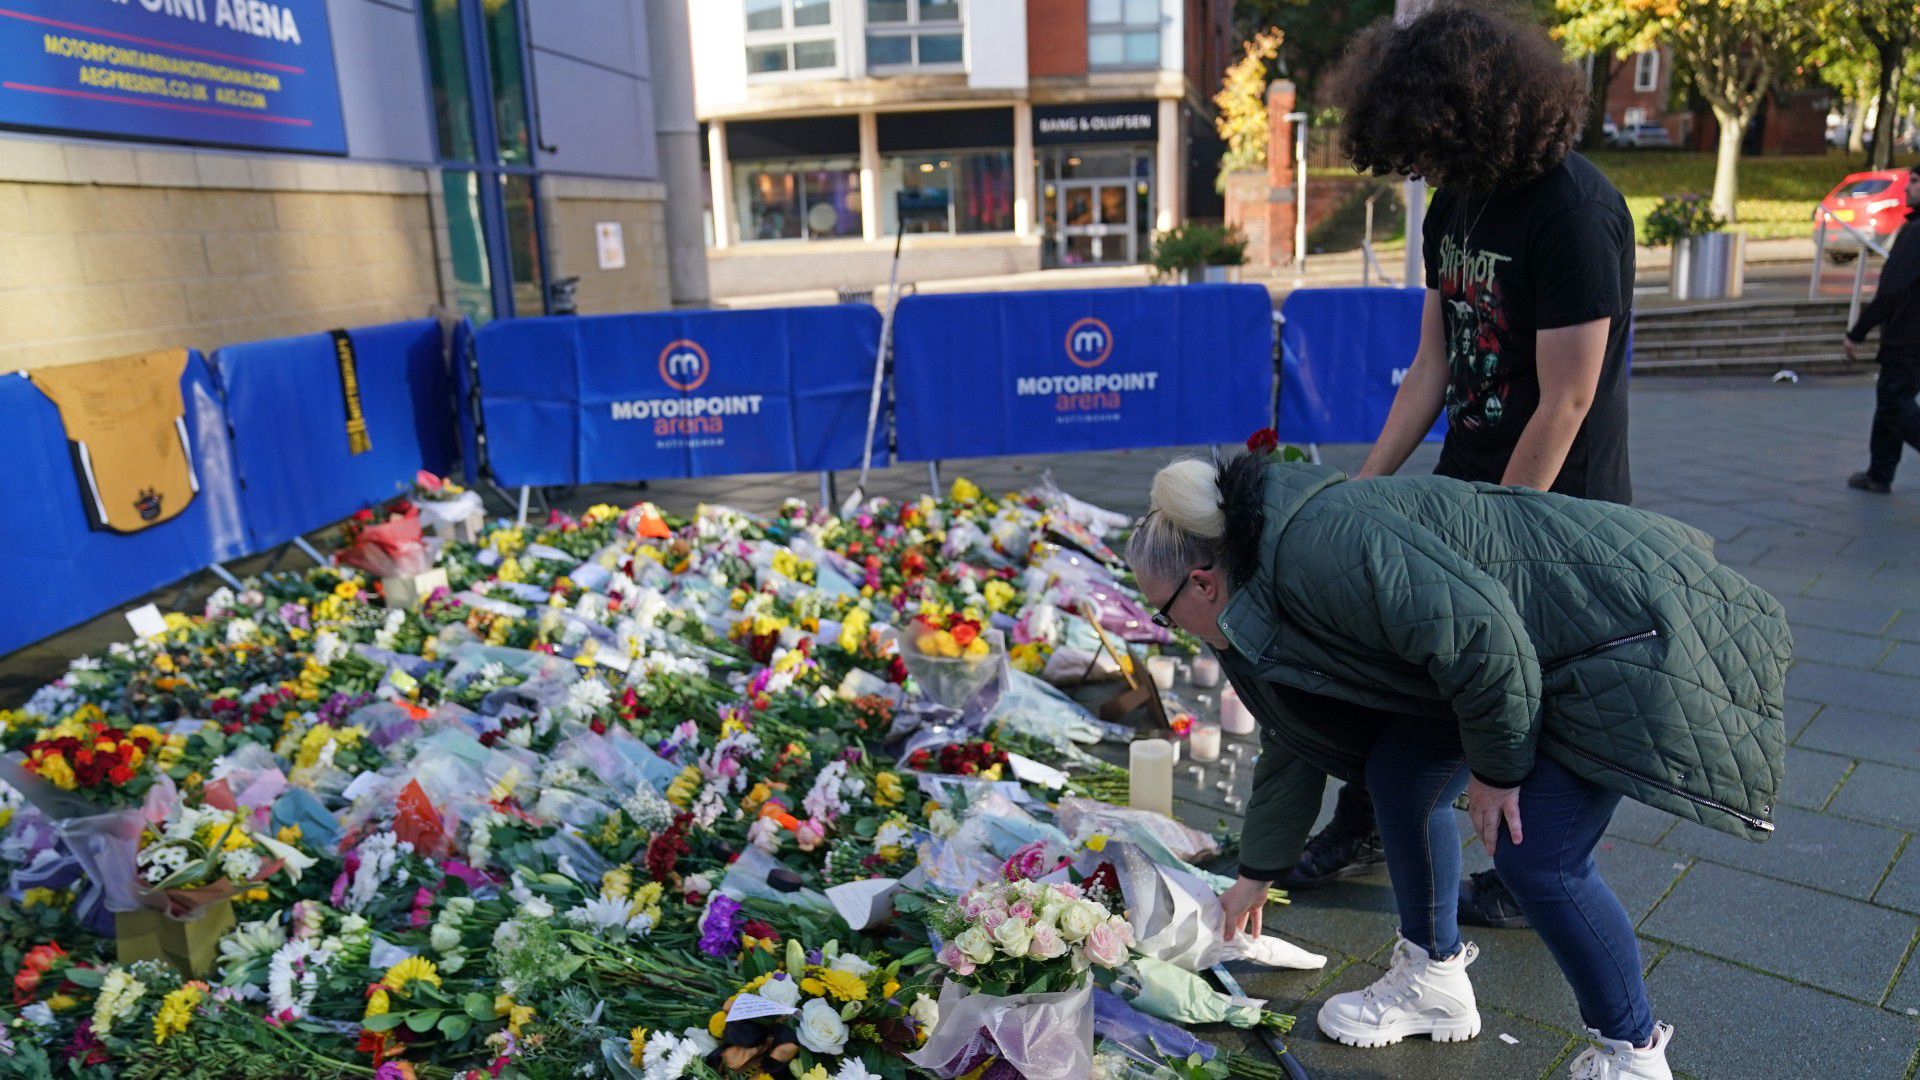 A szurkolókat is megrázta a tragédia, több százan emlékeztek virágokkal és mécsesekkel Johnsonra / Fotó: Getty Images